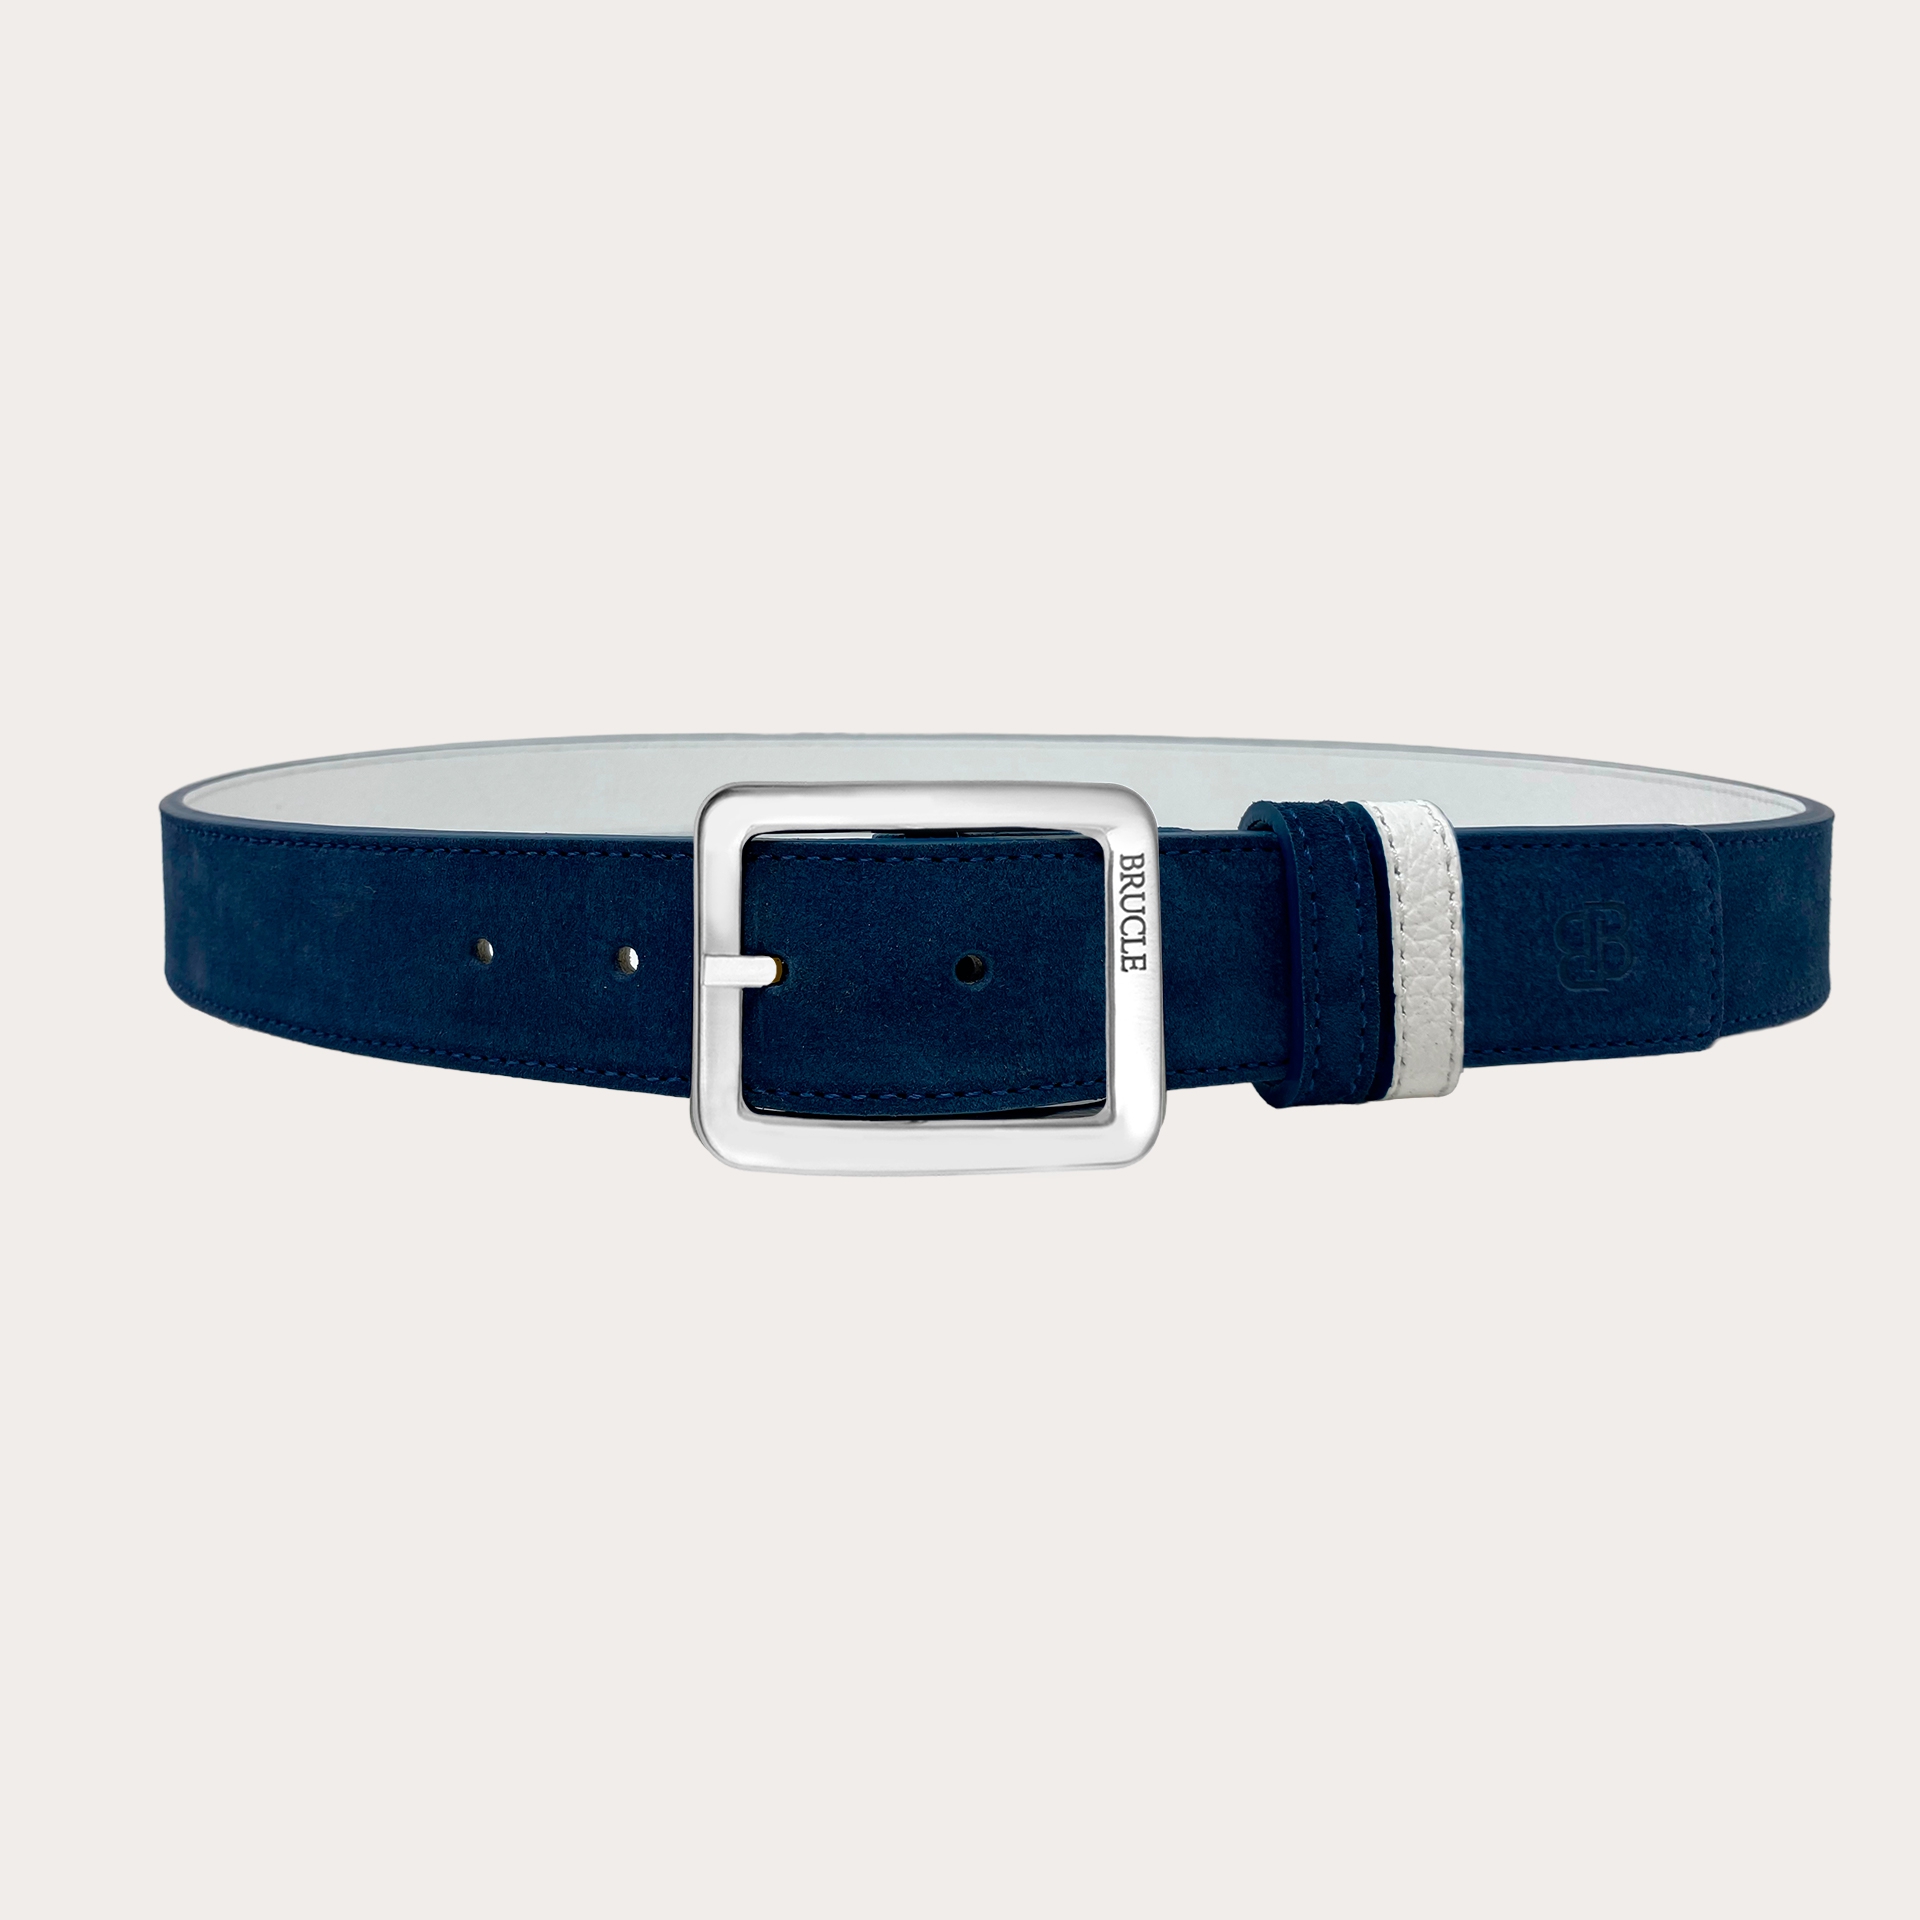 Cinturón reversible en ante azul y piel abatanada blanca